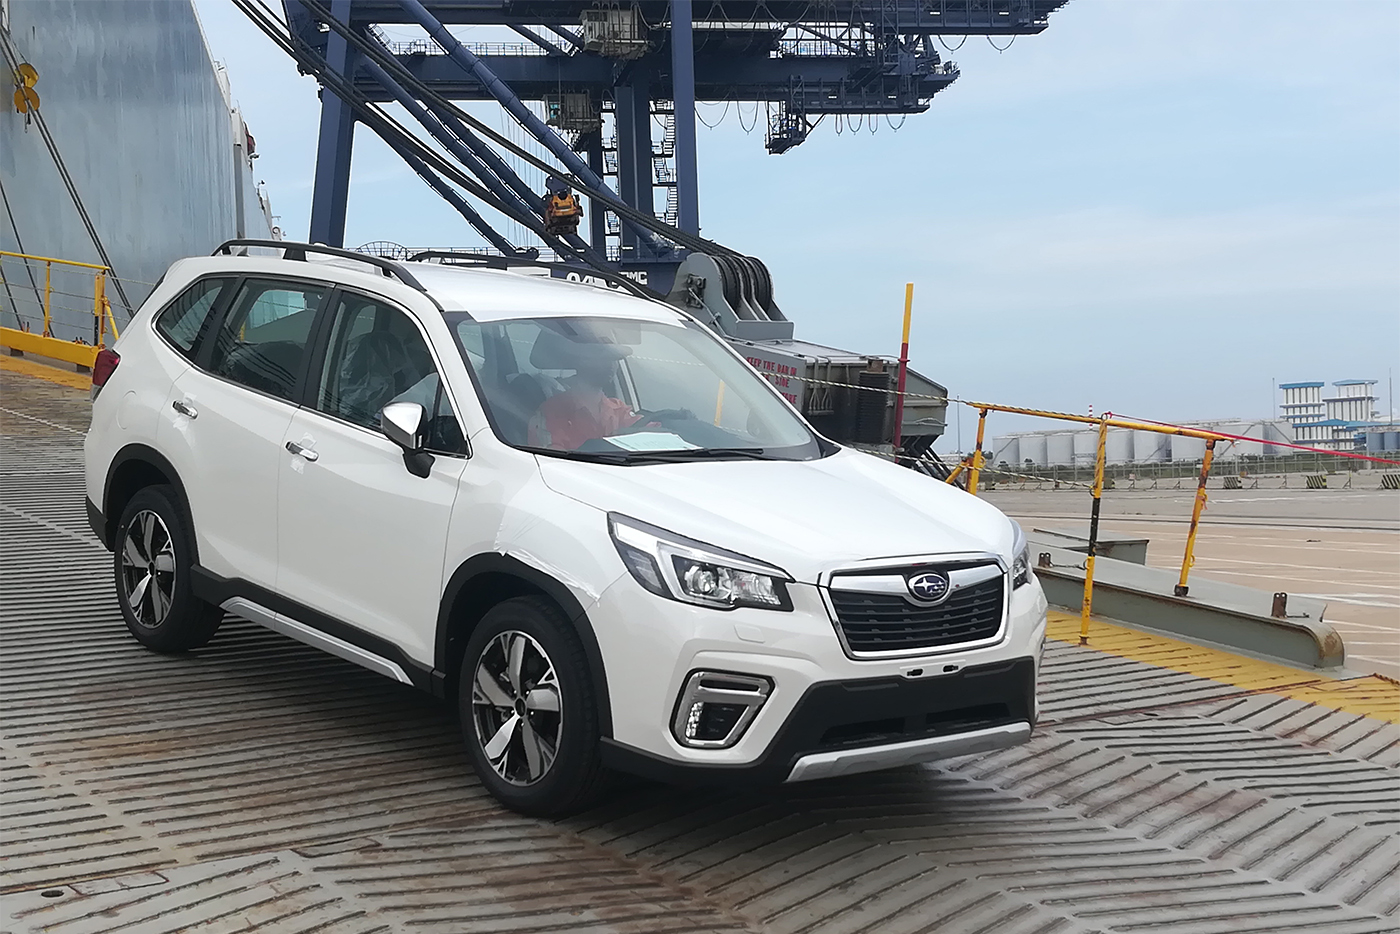 ‘Khám phá’ công nghệ và ứng dụng trên Subaru Forester 2019